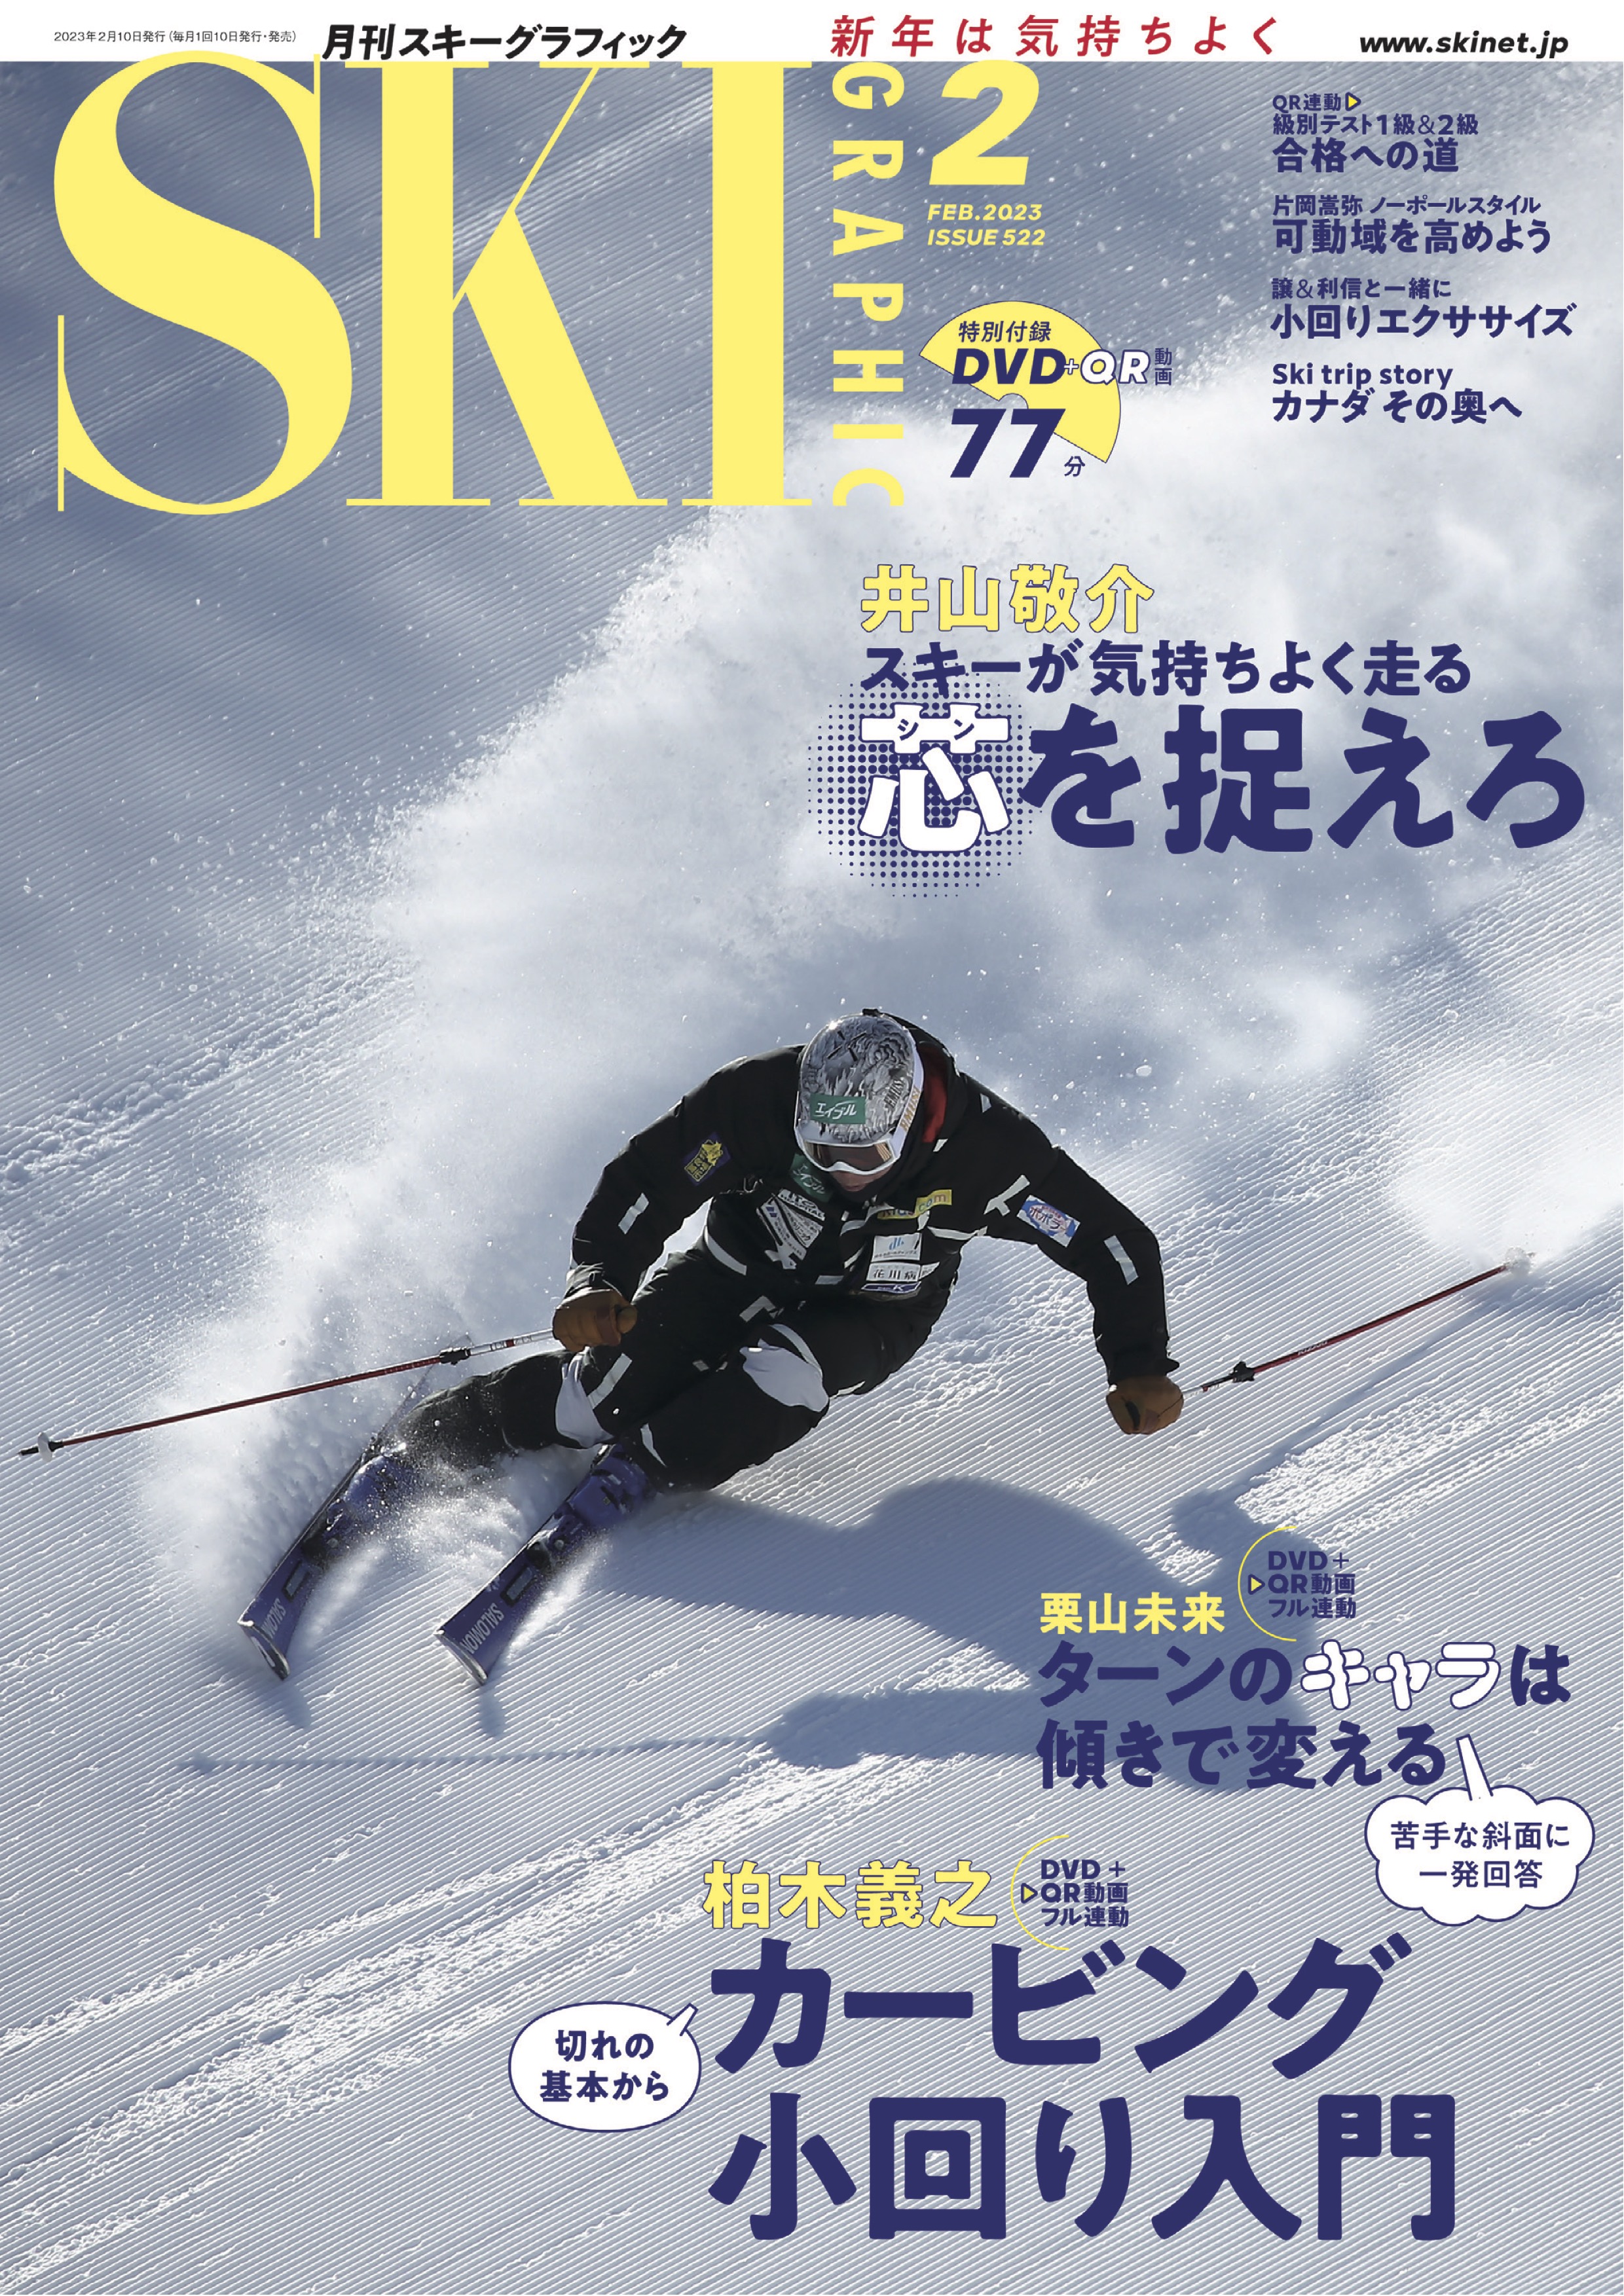 スキーグラフィックNo.522 - スキーグラフィック編集部 - 漫画・ラノベ